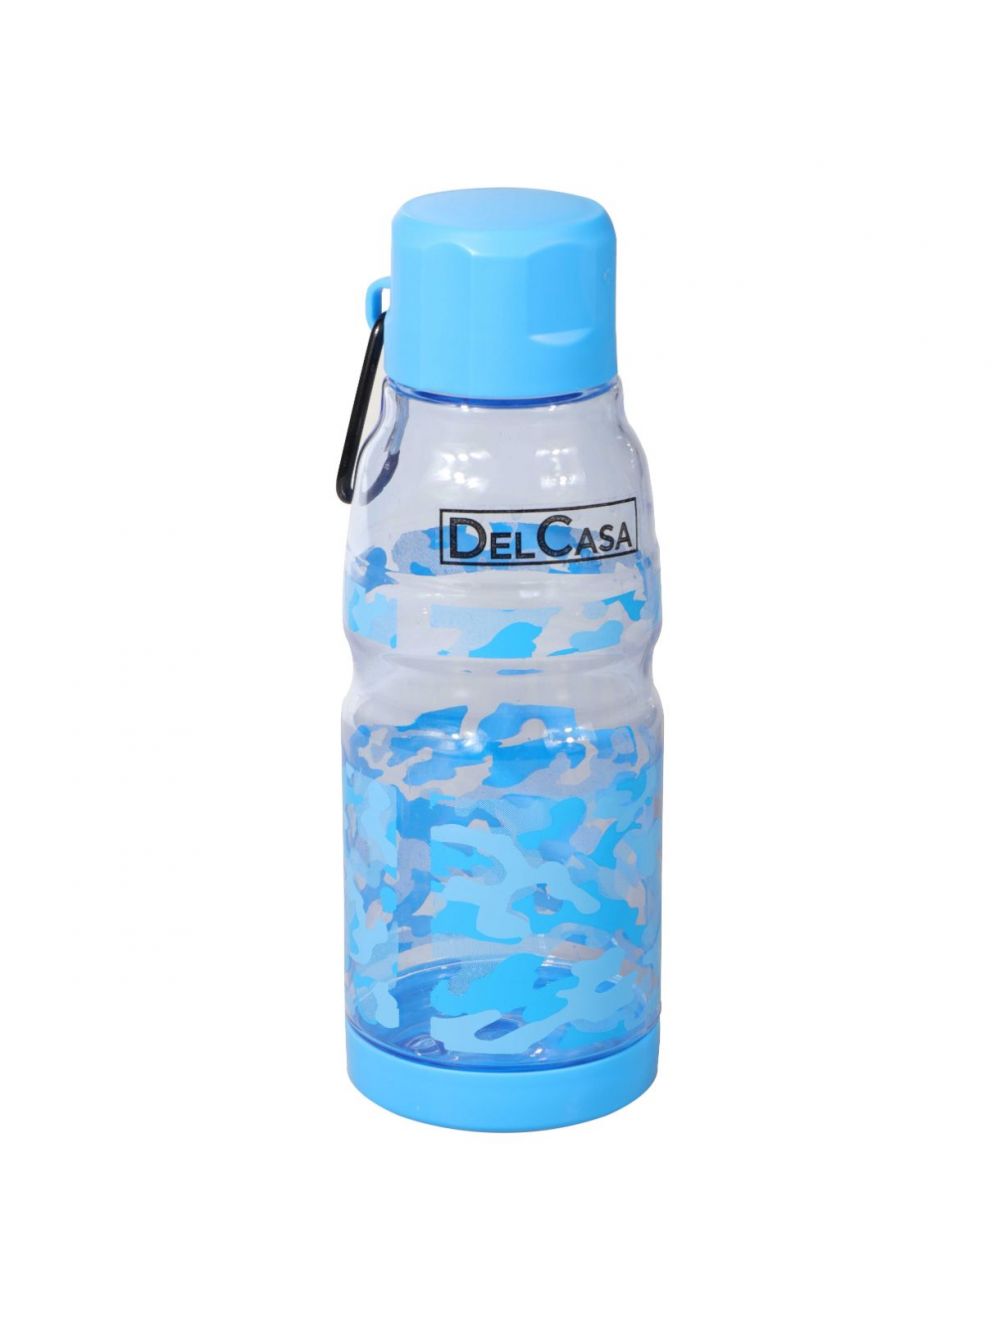 Delcasa 500 ml Water Bottle -DC1349